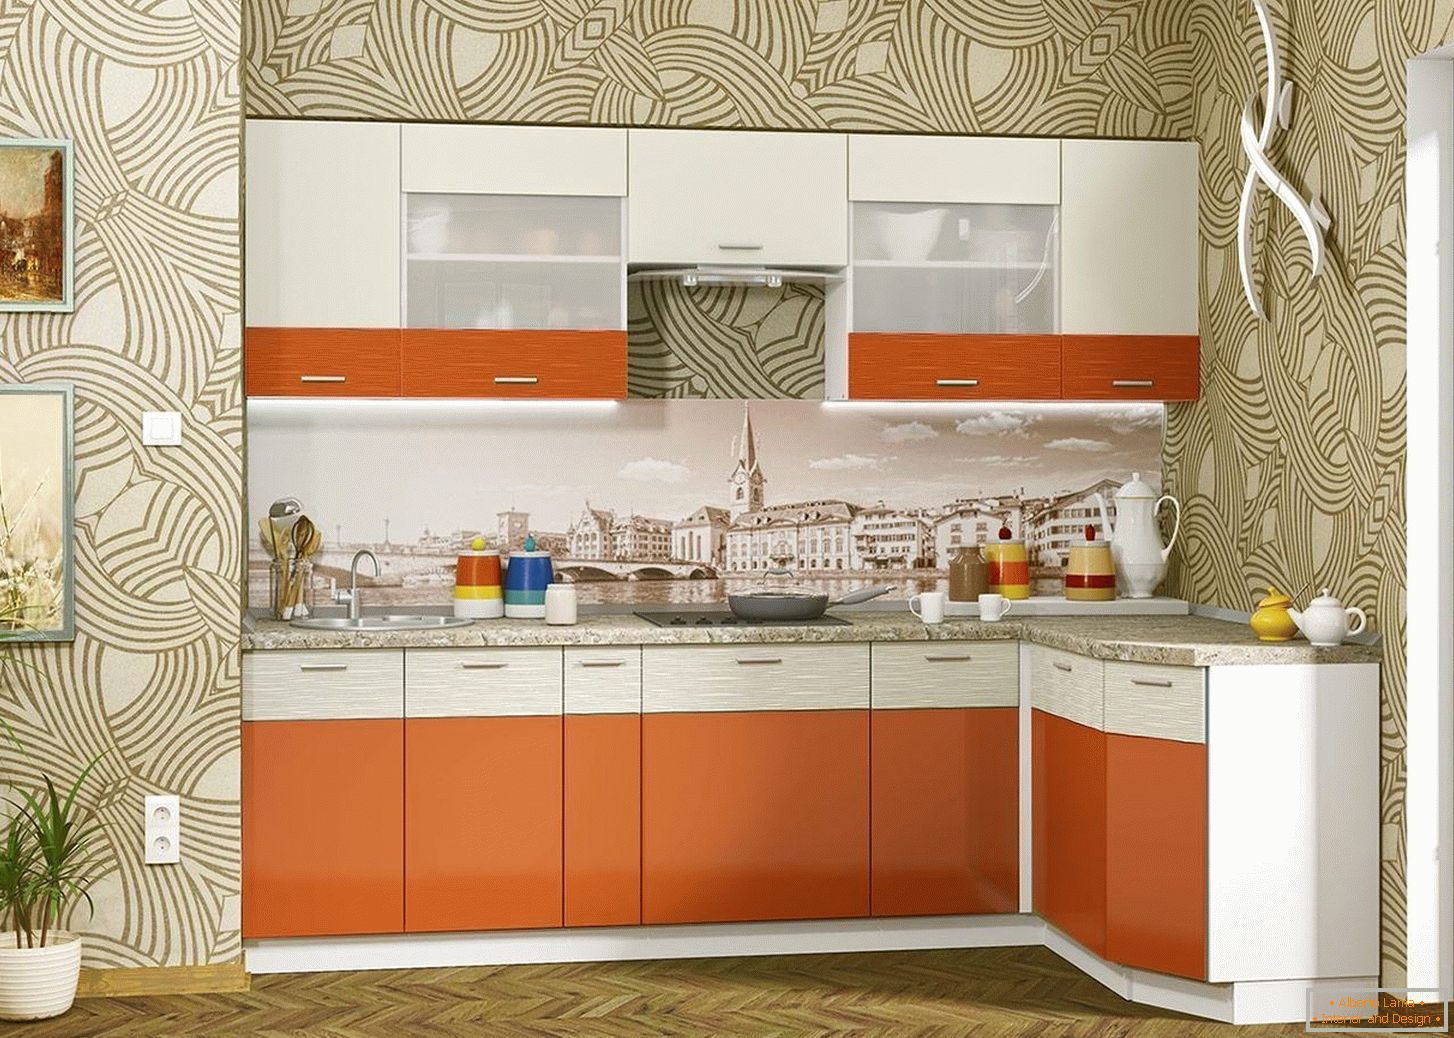 Kompakte Küche in orange Farbe